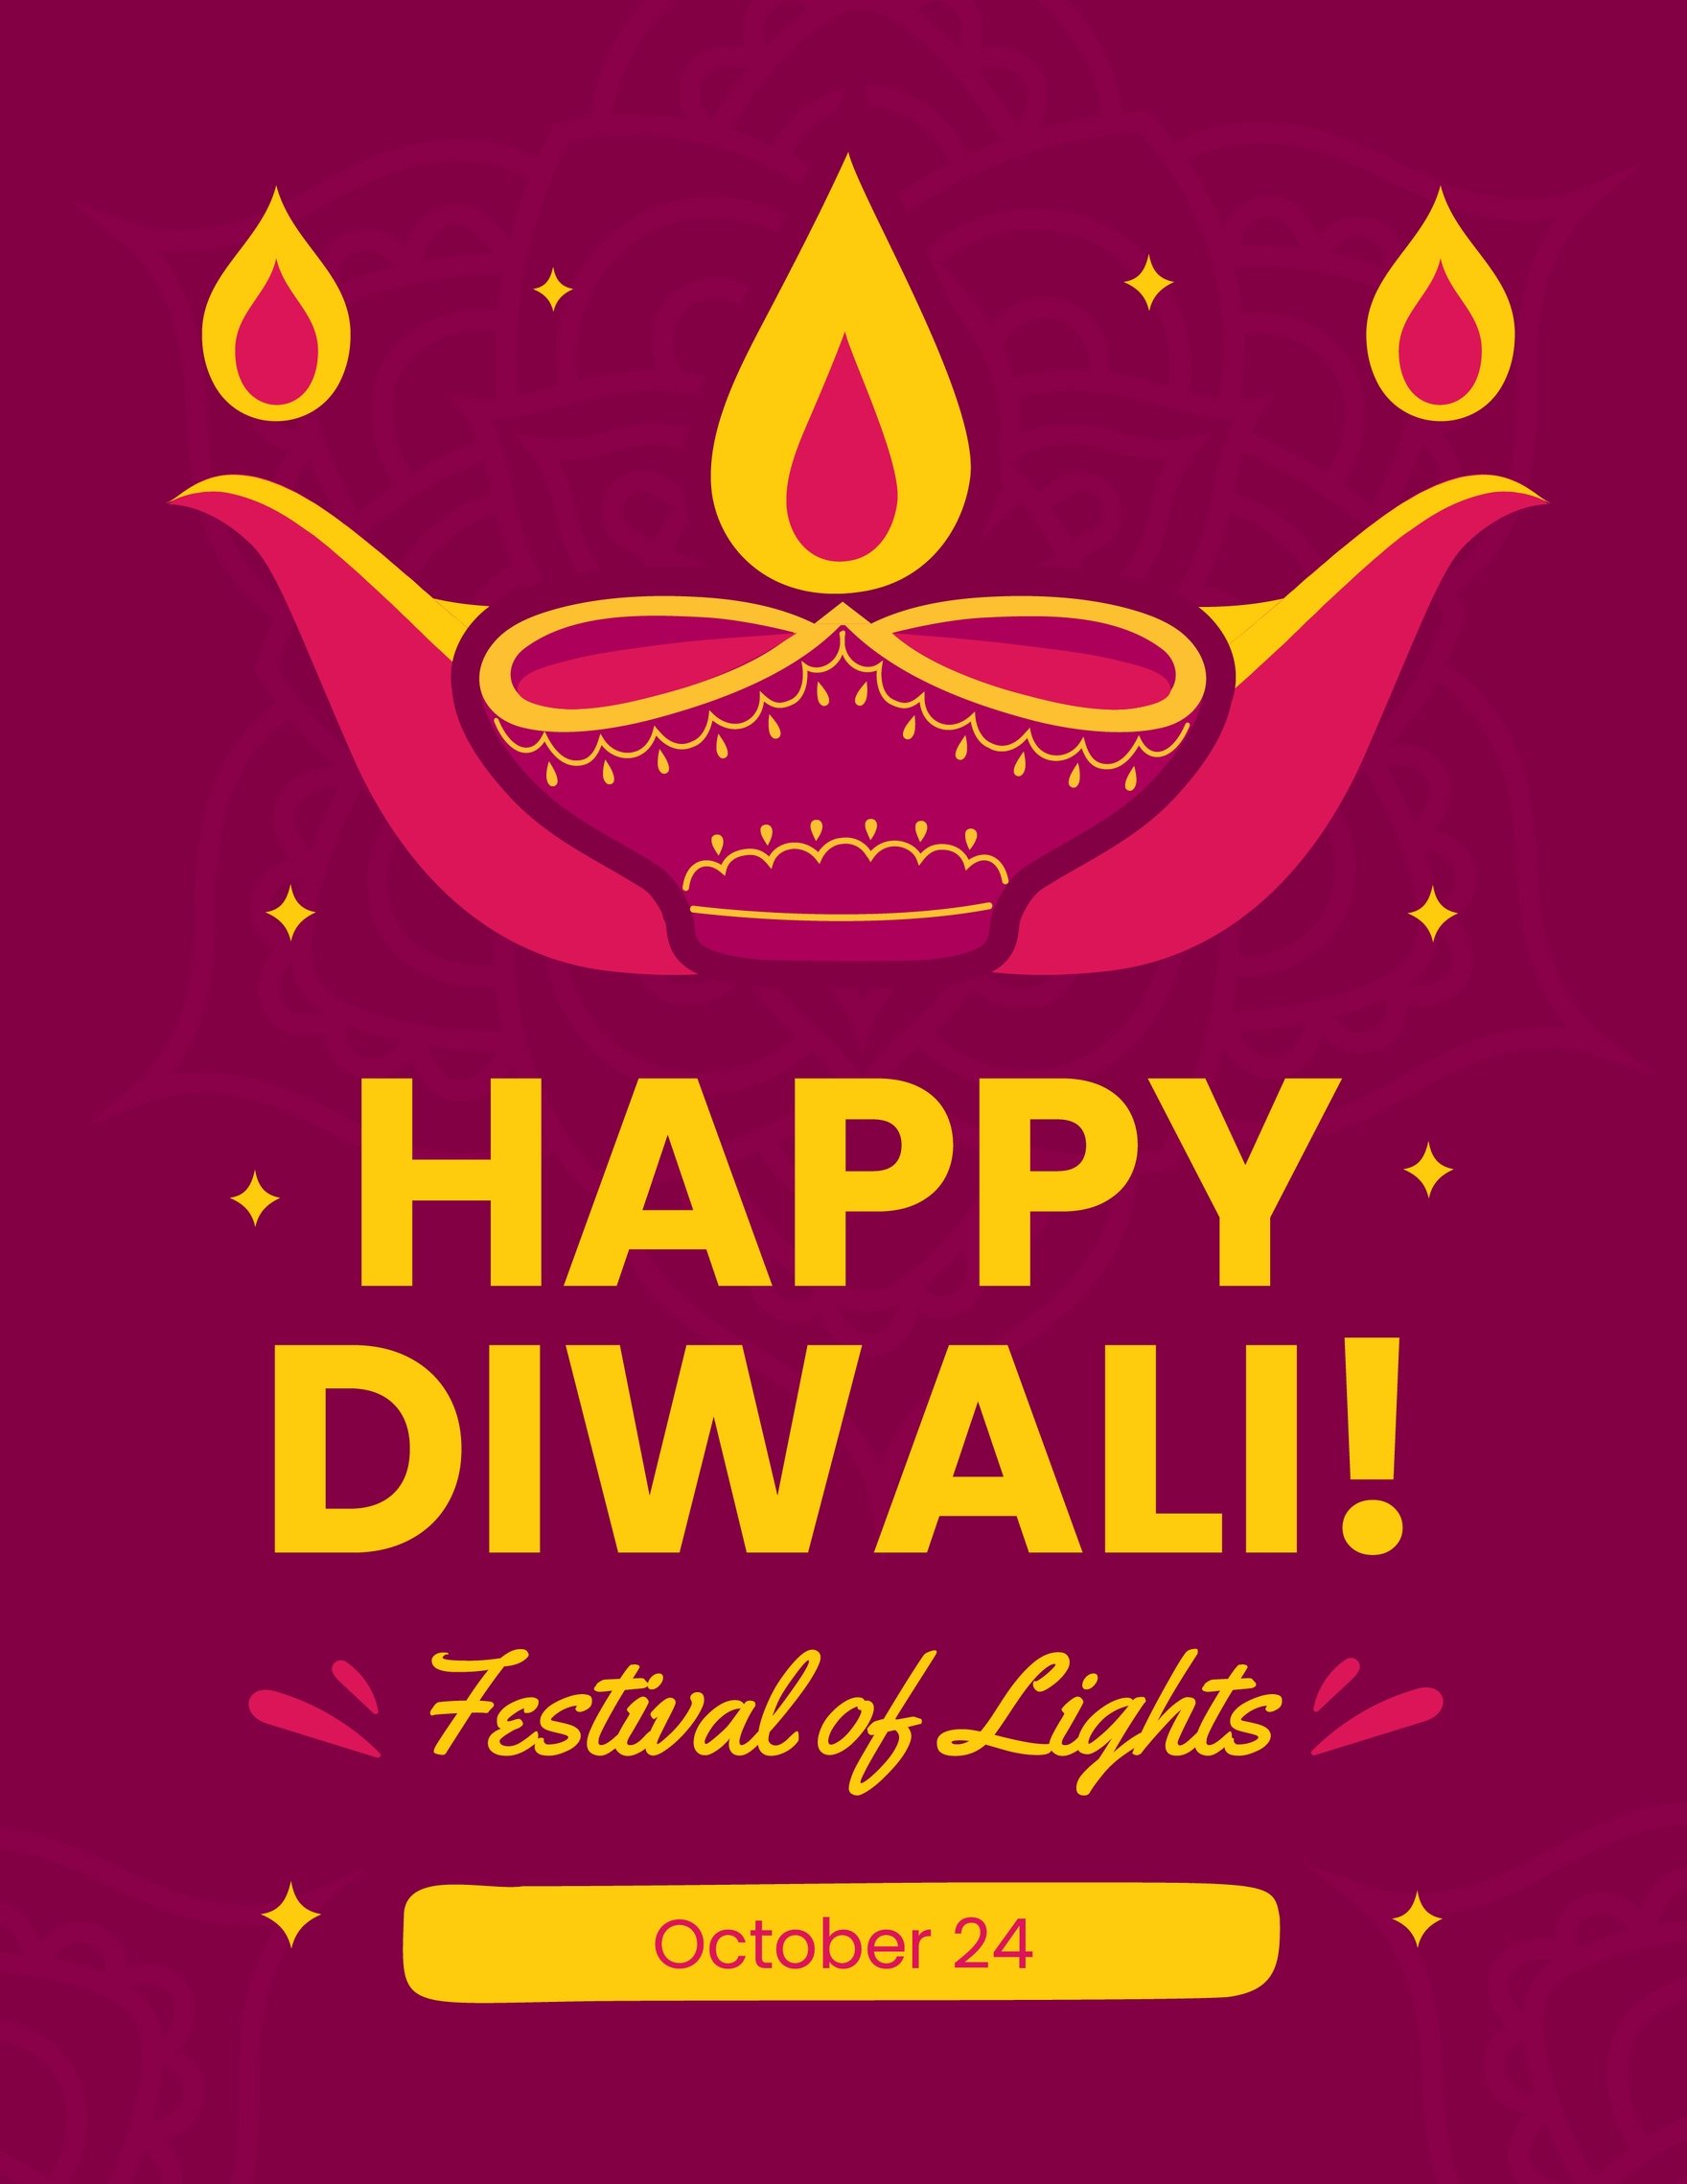 Free Diwali Mockup Flyer in Word, Google Docs, Illustrator, PSD, Apple Pages, Publisher, EPS, SVG, JPG, PNG